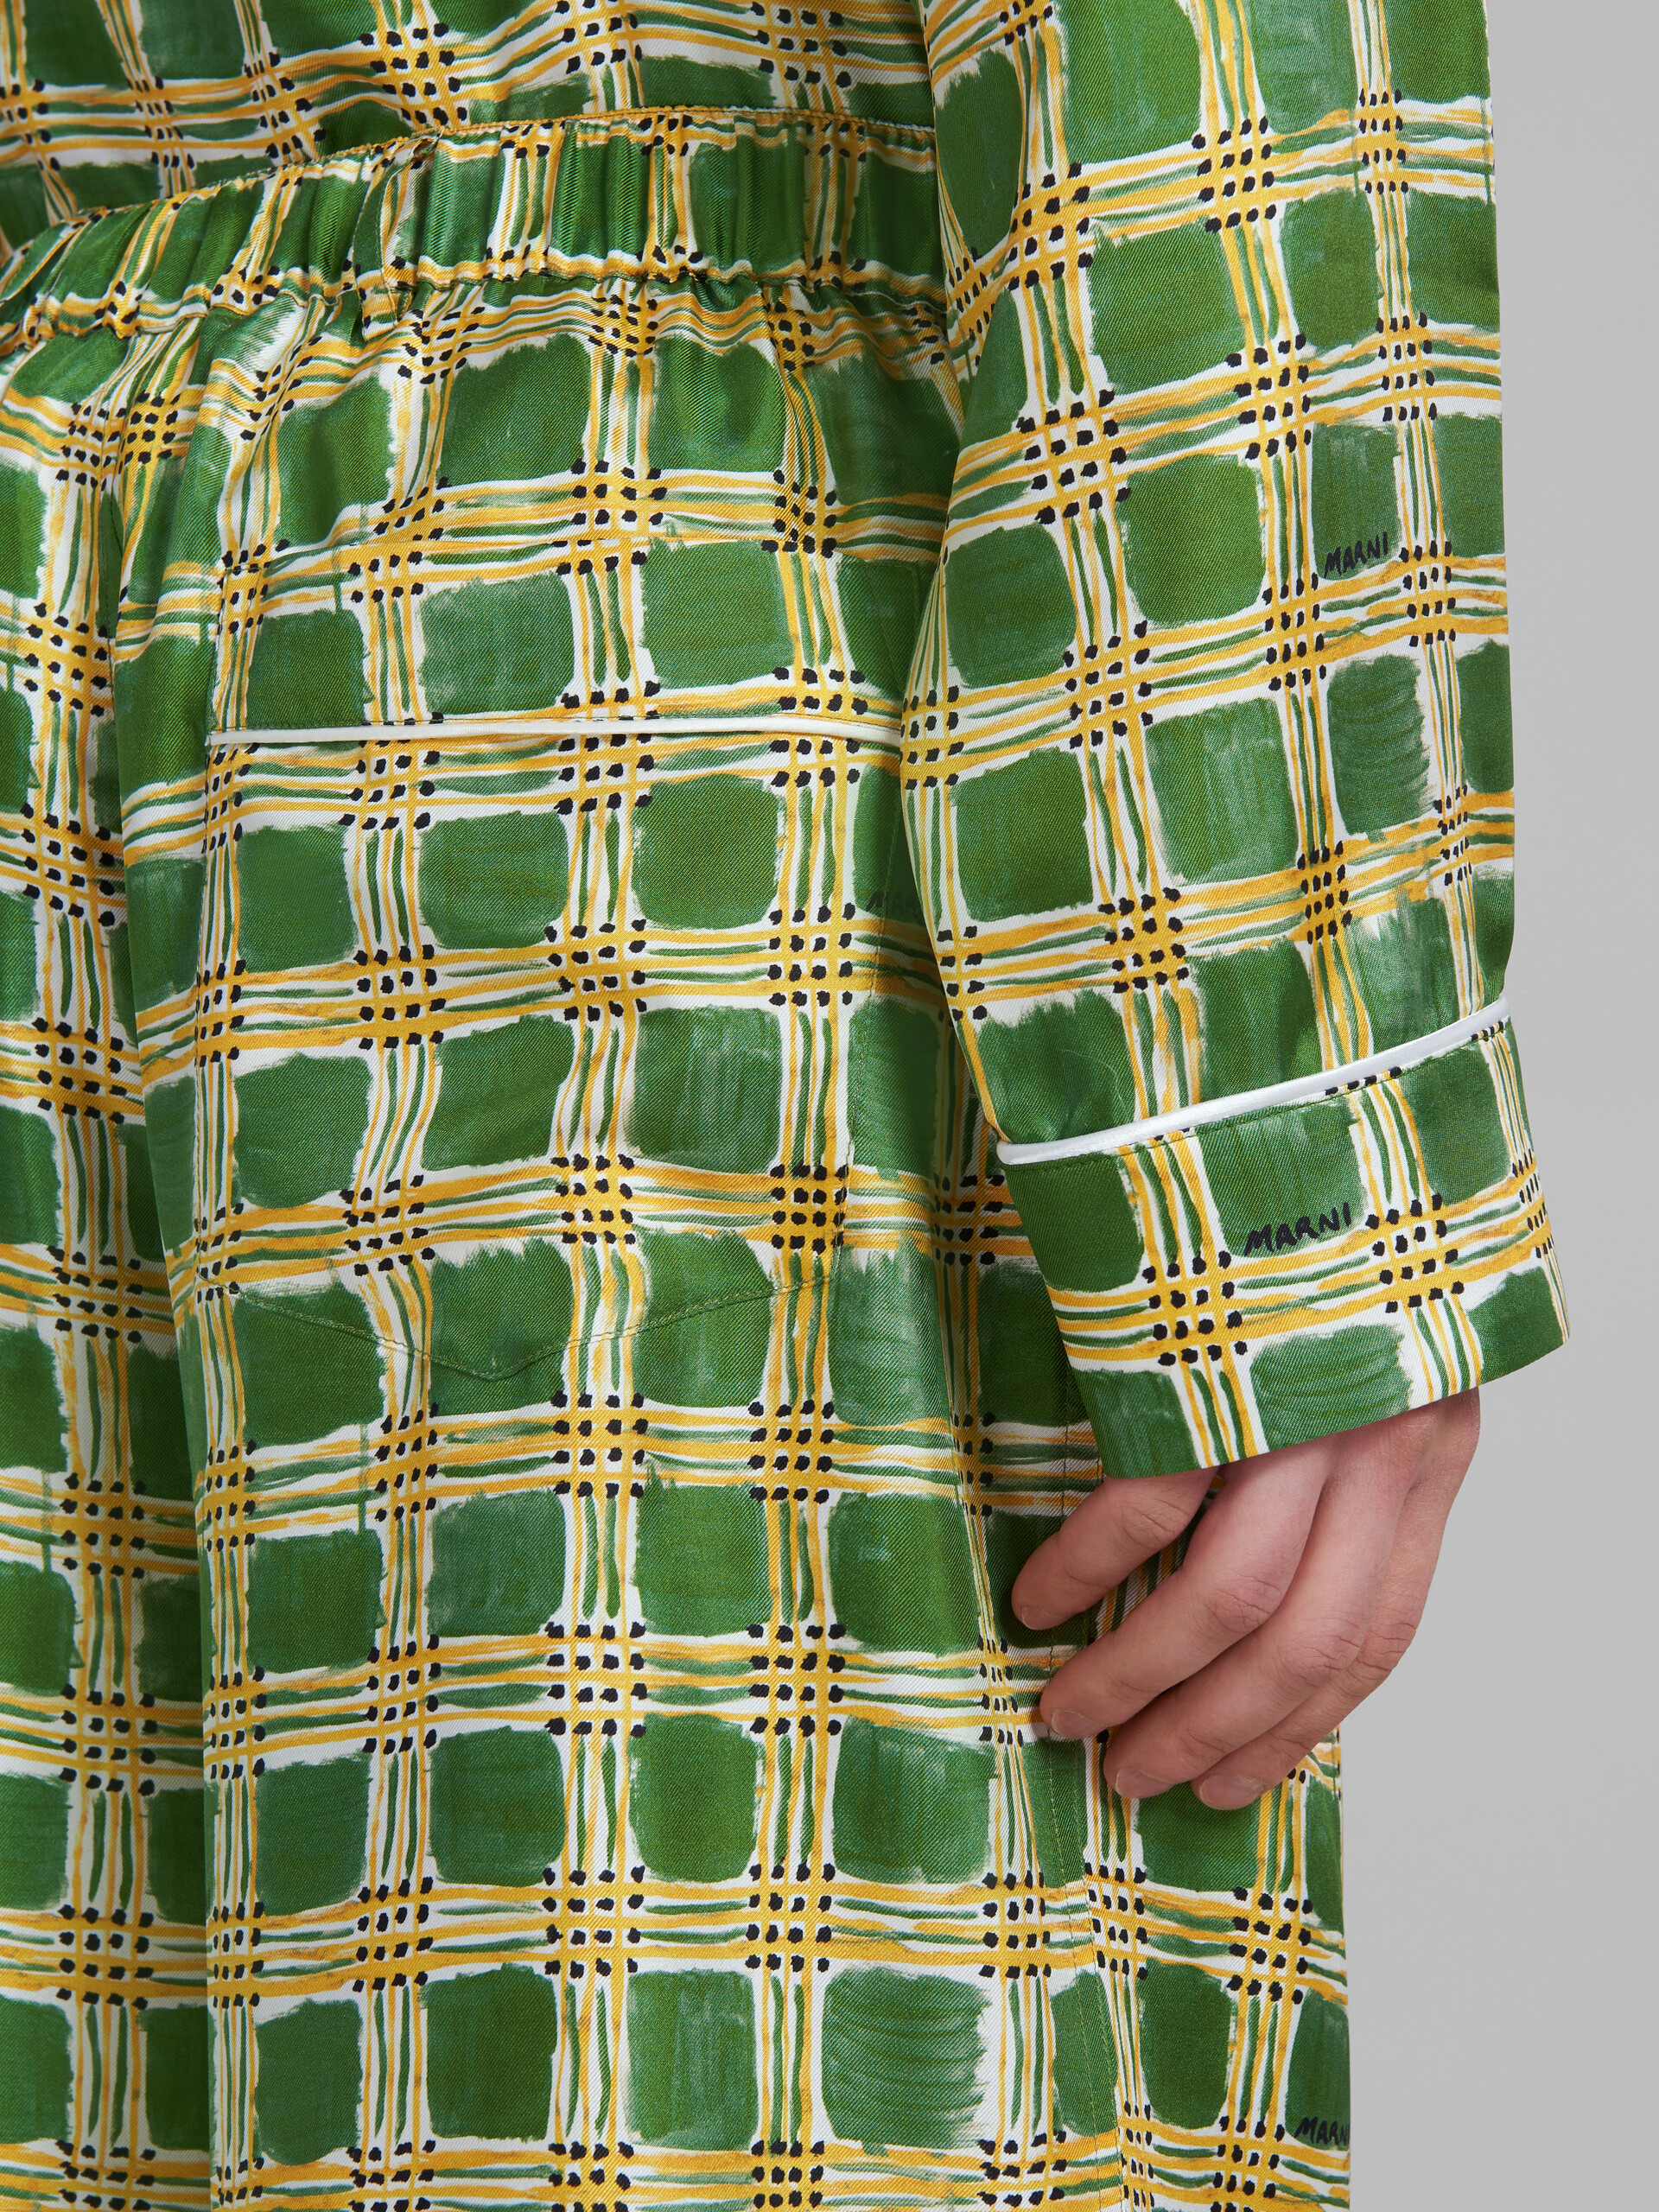 Pantalones verdes de sarga de seda con estampado Check Fields - Pantalones - Image 4